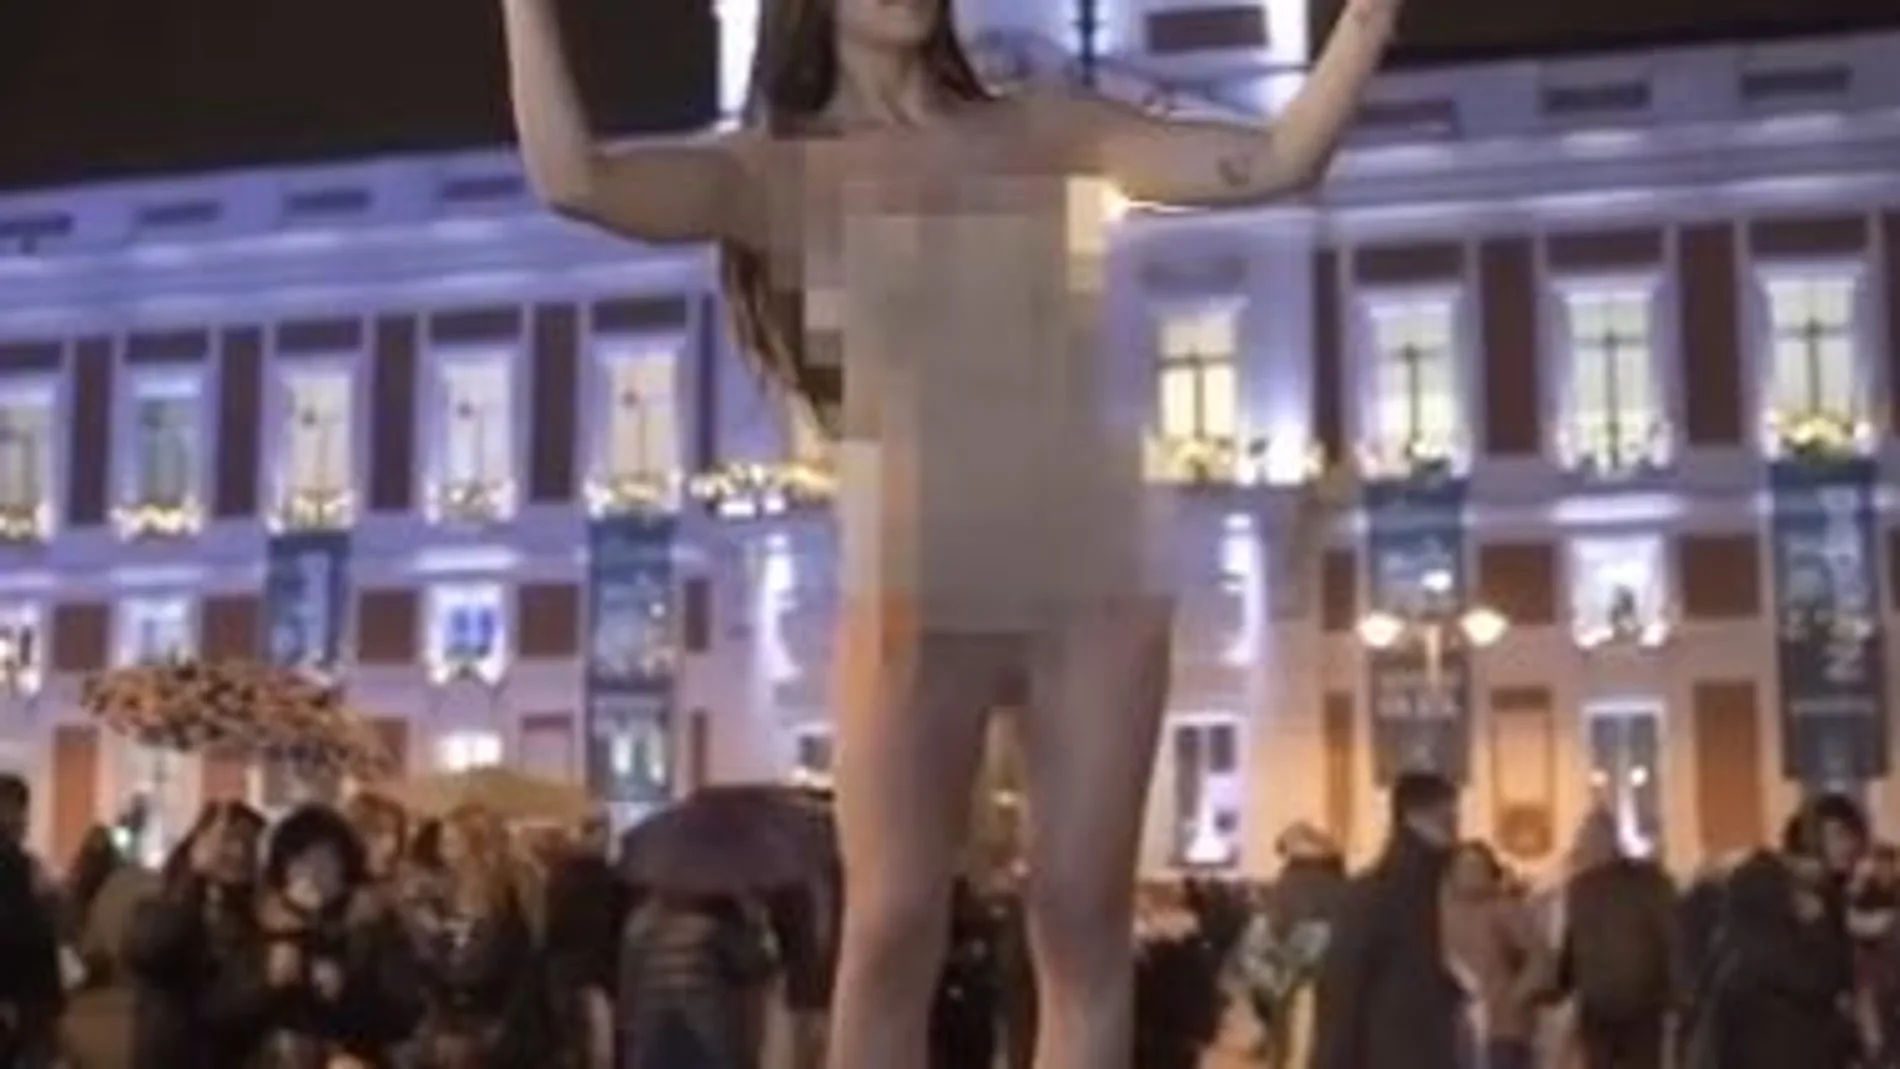 Cristina pedroche ya se desnudó en frente de la Puerta del Sol para promocionar las campanadas.